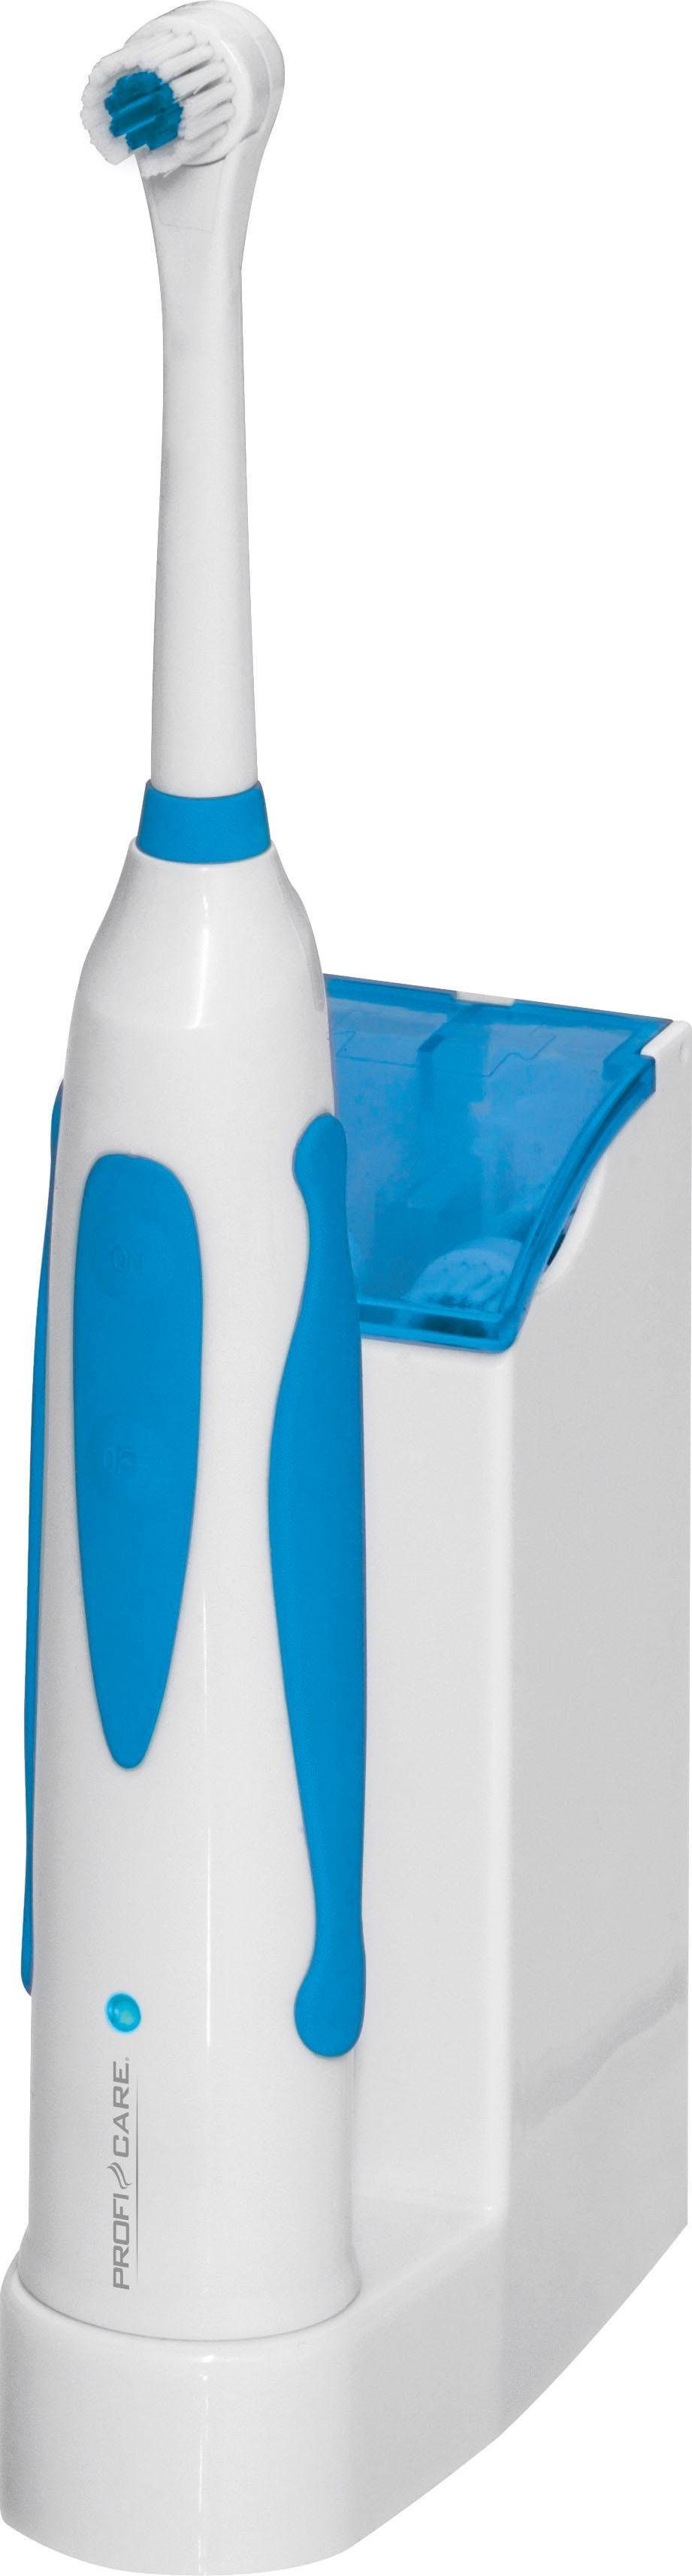 Haushalt Zahnpflege ProfiCare Elektrische Zahnbürste PC-EZ 3055, Aufsteckbürsten: 4 St., Bürste mit abgerundeten Tynex DuPont®-Q